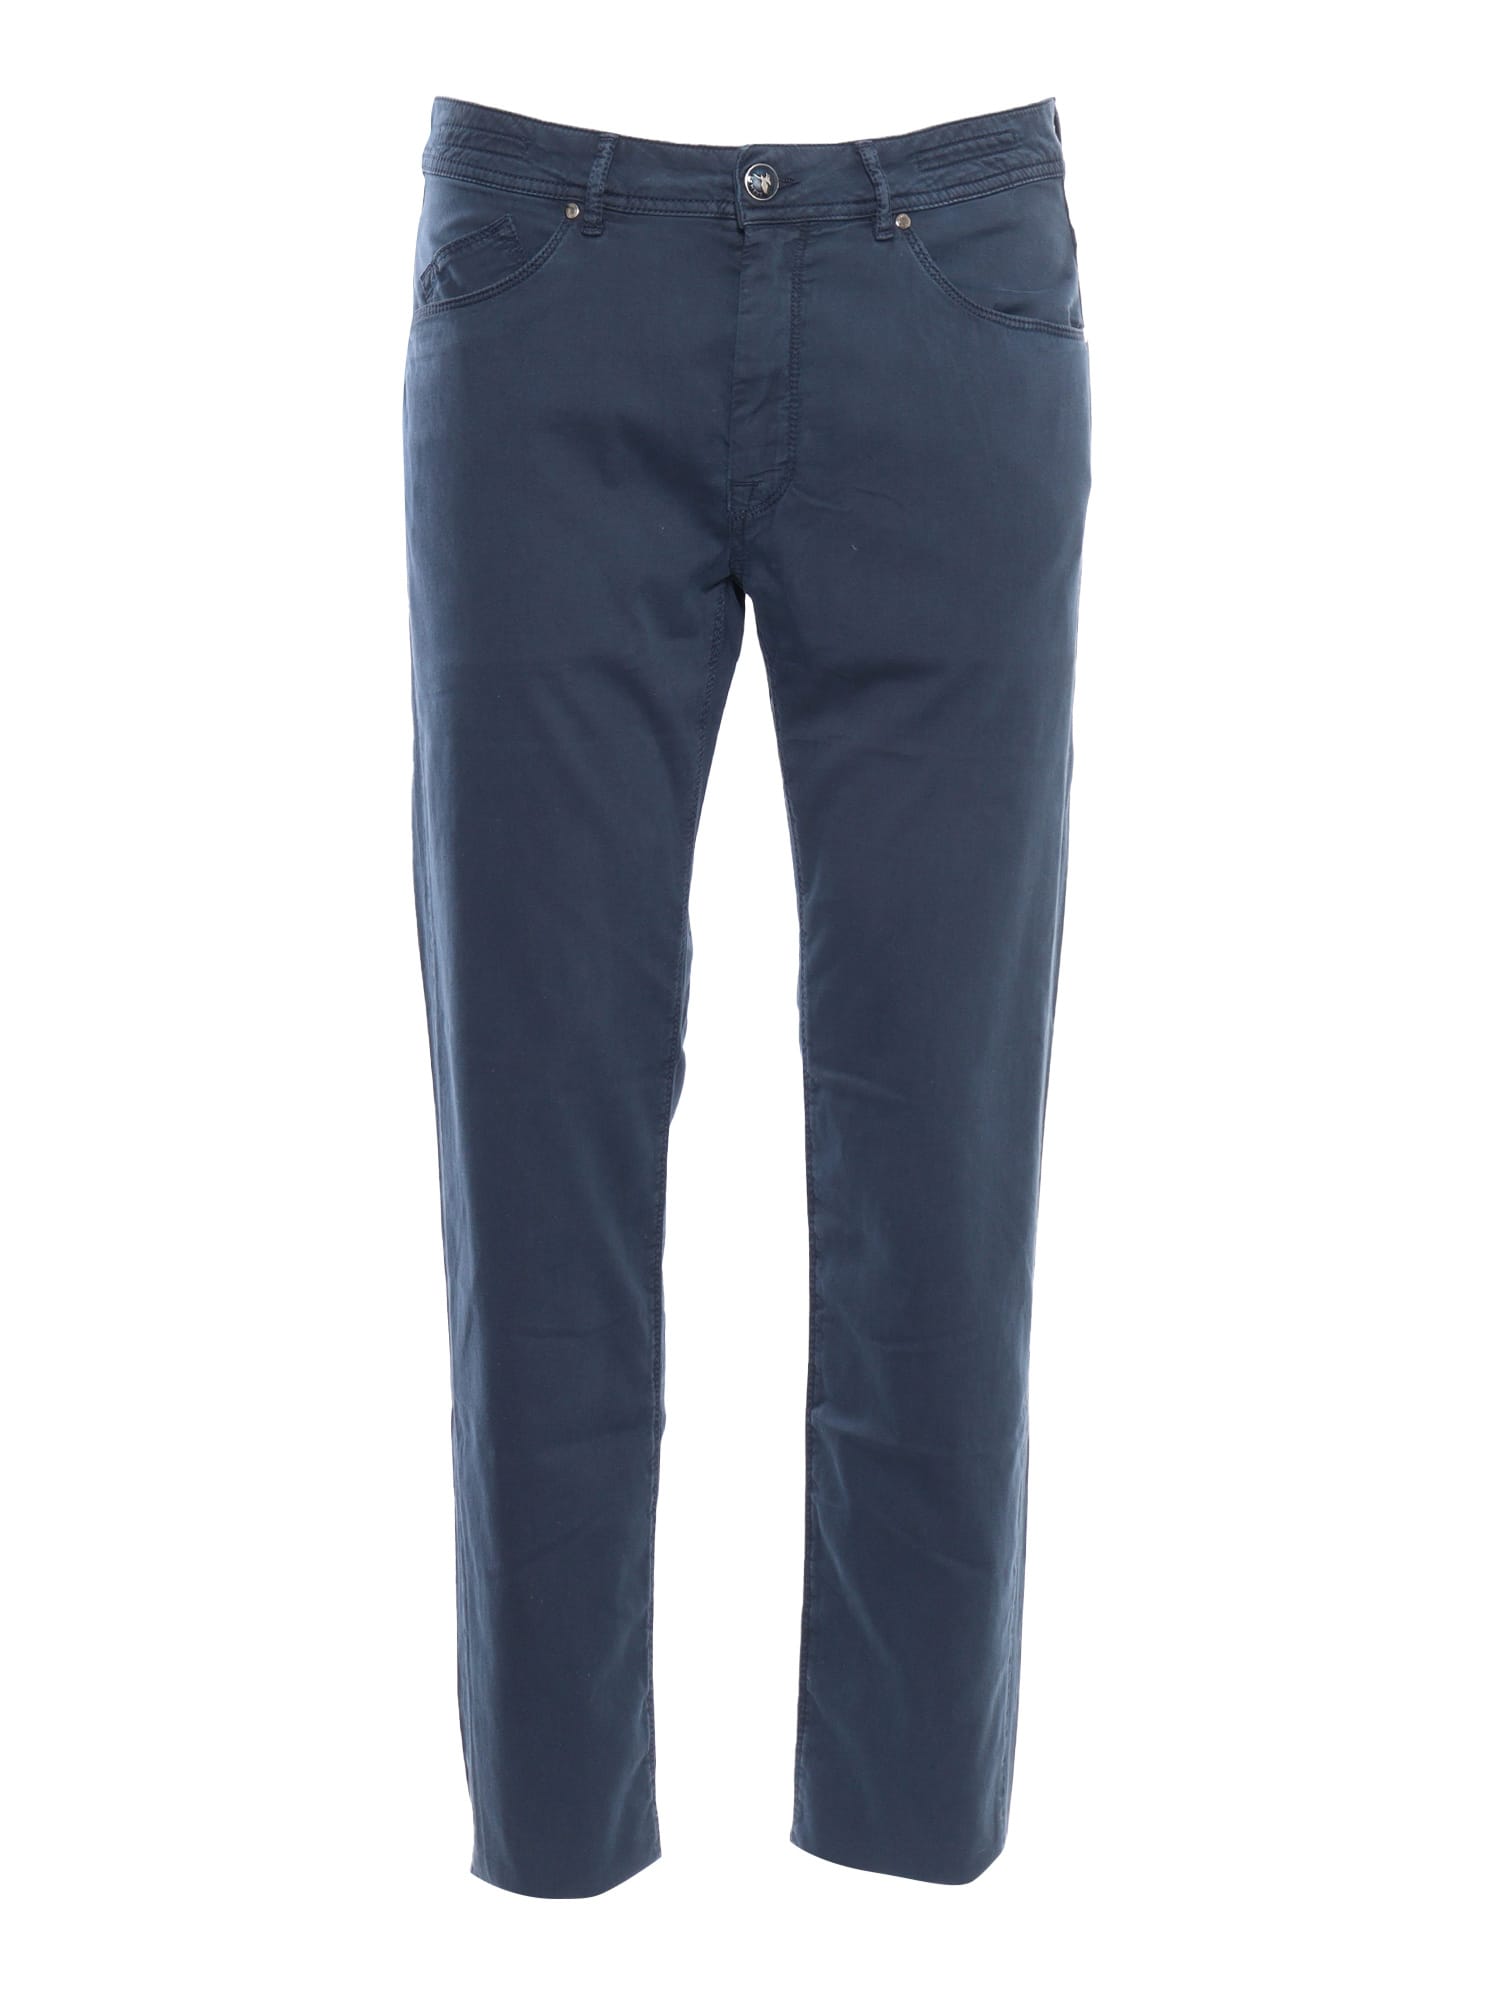 Shop Barmas Blue Trousers